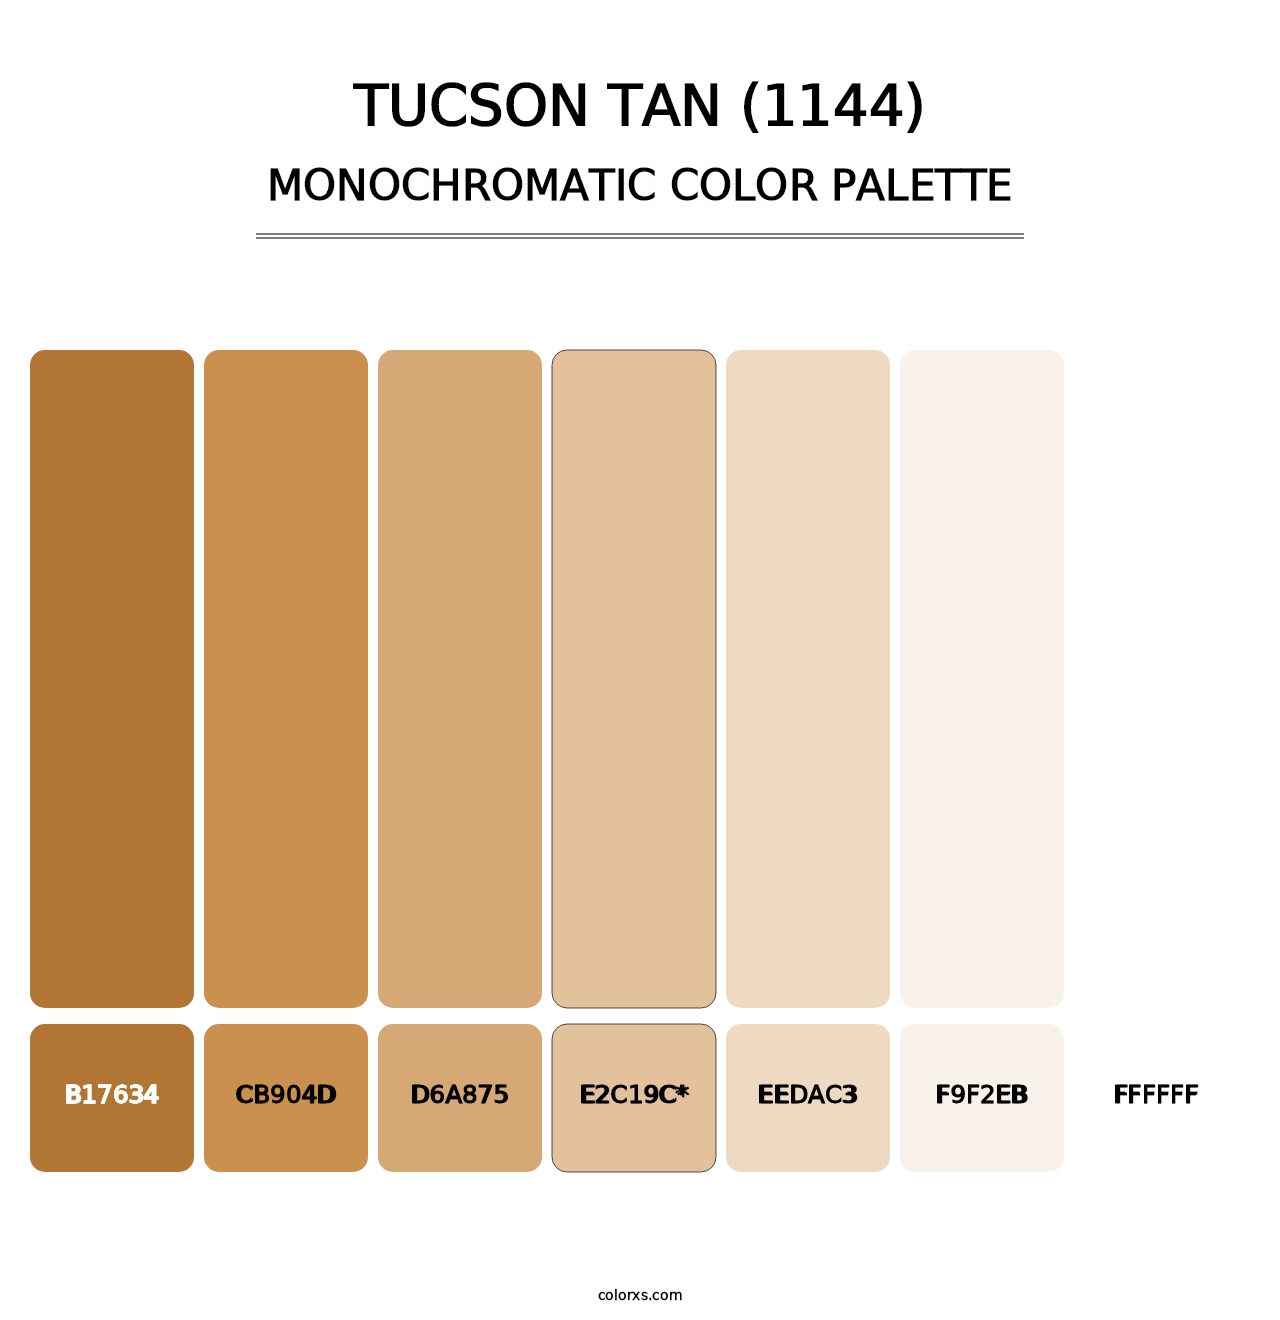 Tucson Tan (1144) - Monochromatic Color Palette